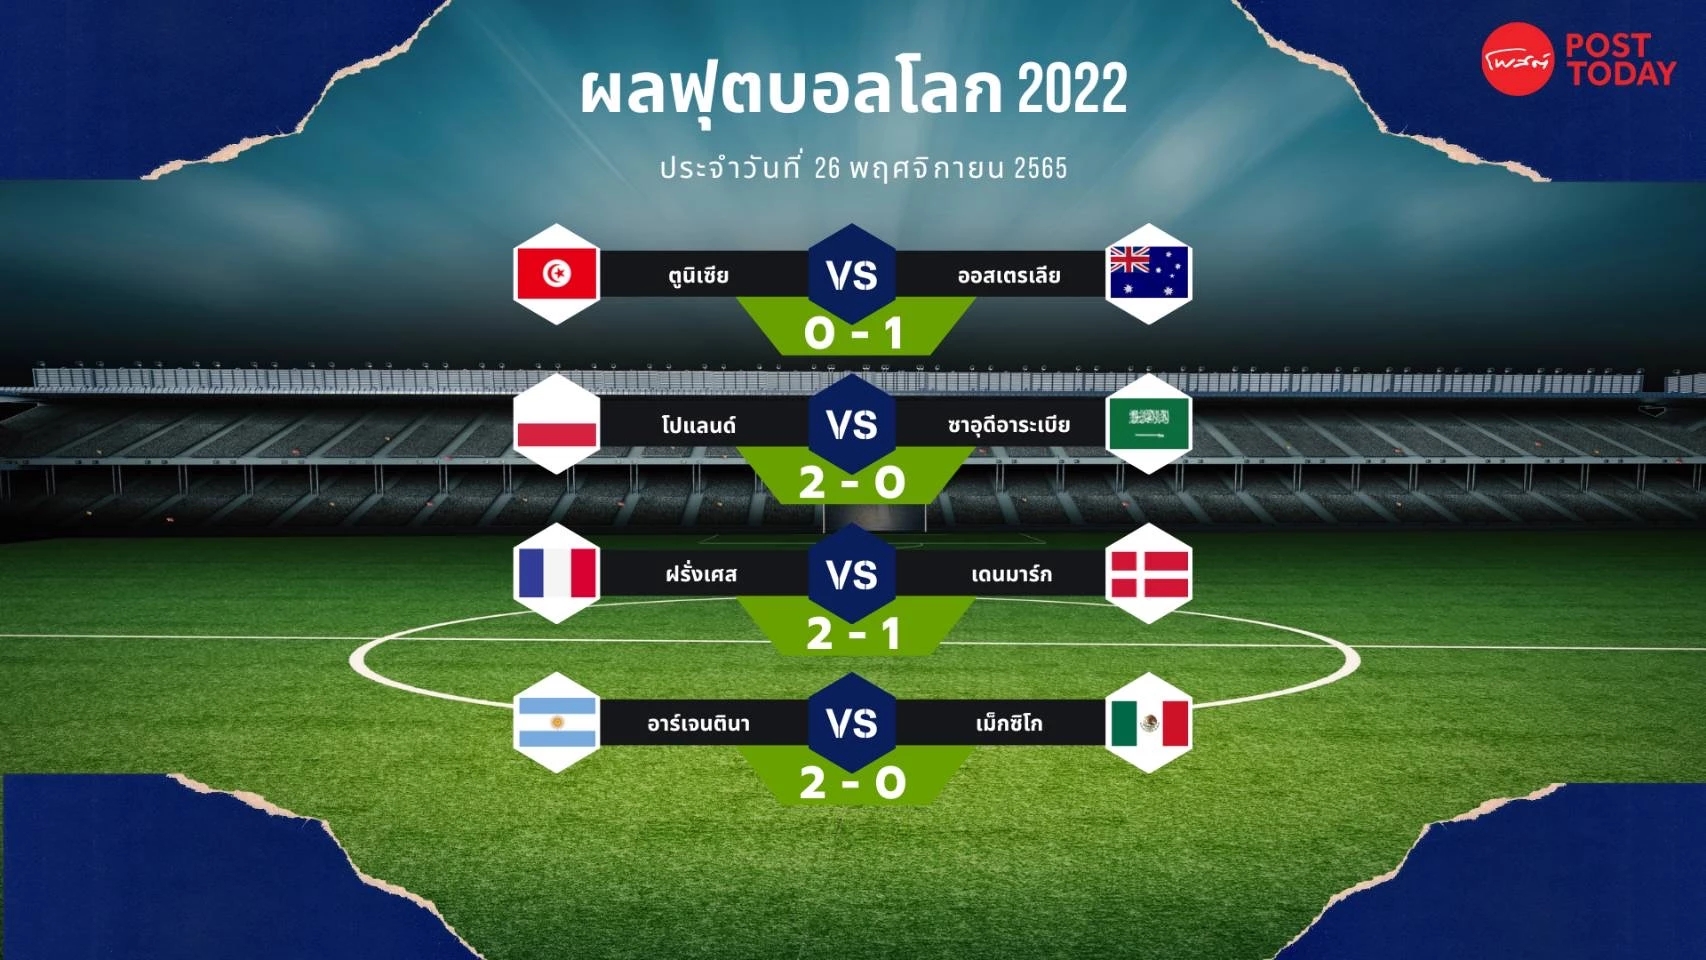 ฟุตบอลโลก 2022  อาร์เจนตินายังมีลุ้นเข้ารอบต่อ หลังเอาชนะเม็กซิโกสำเร็จ